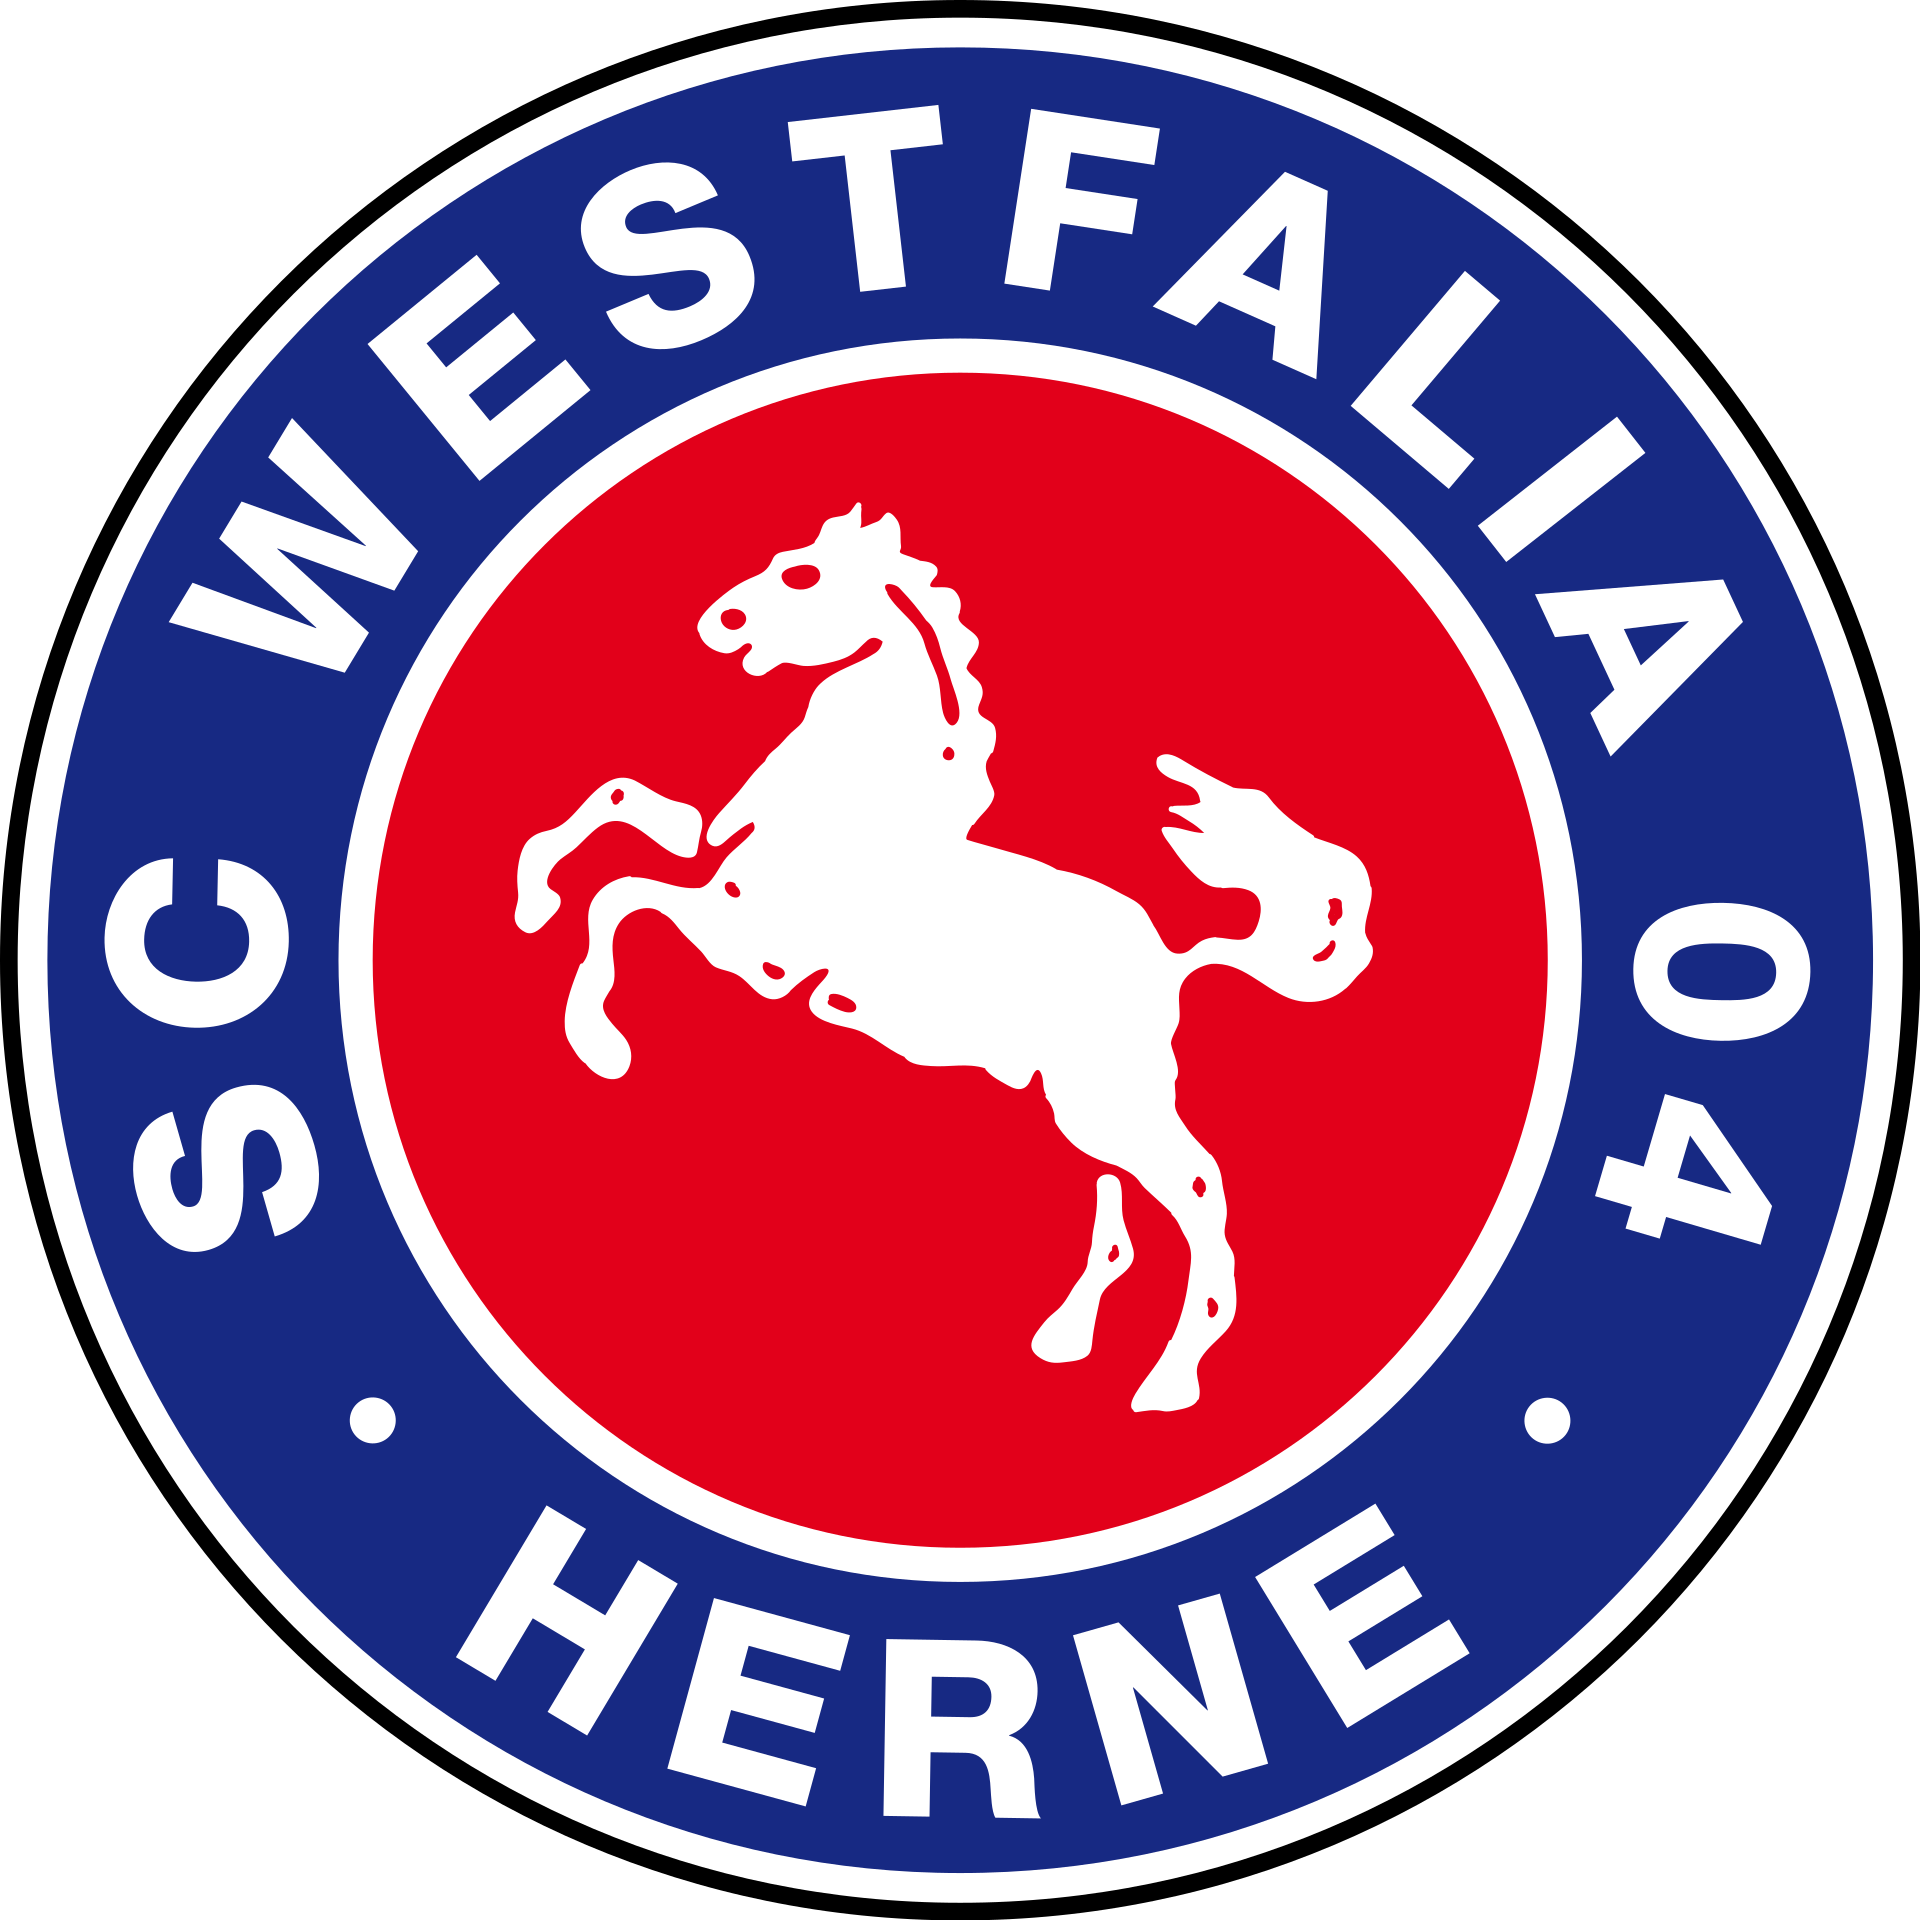 Sport Club Westfalia 04 e. V. Herne